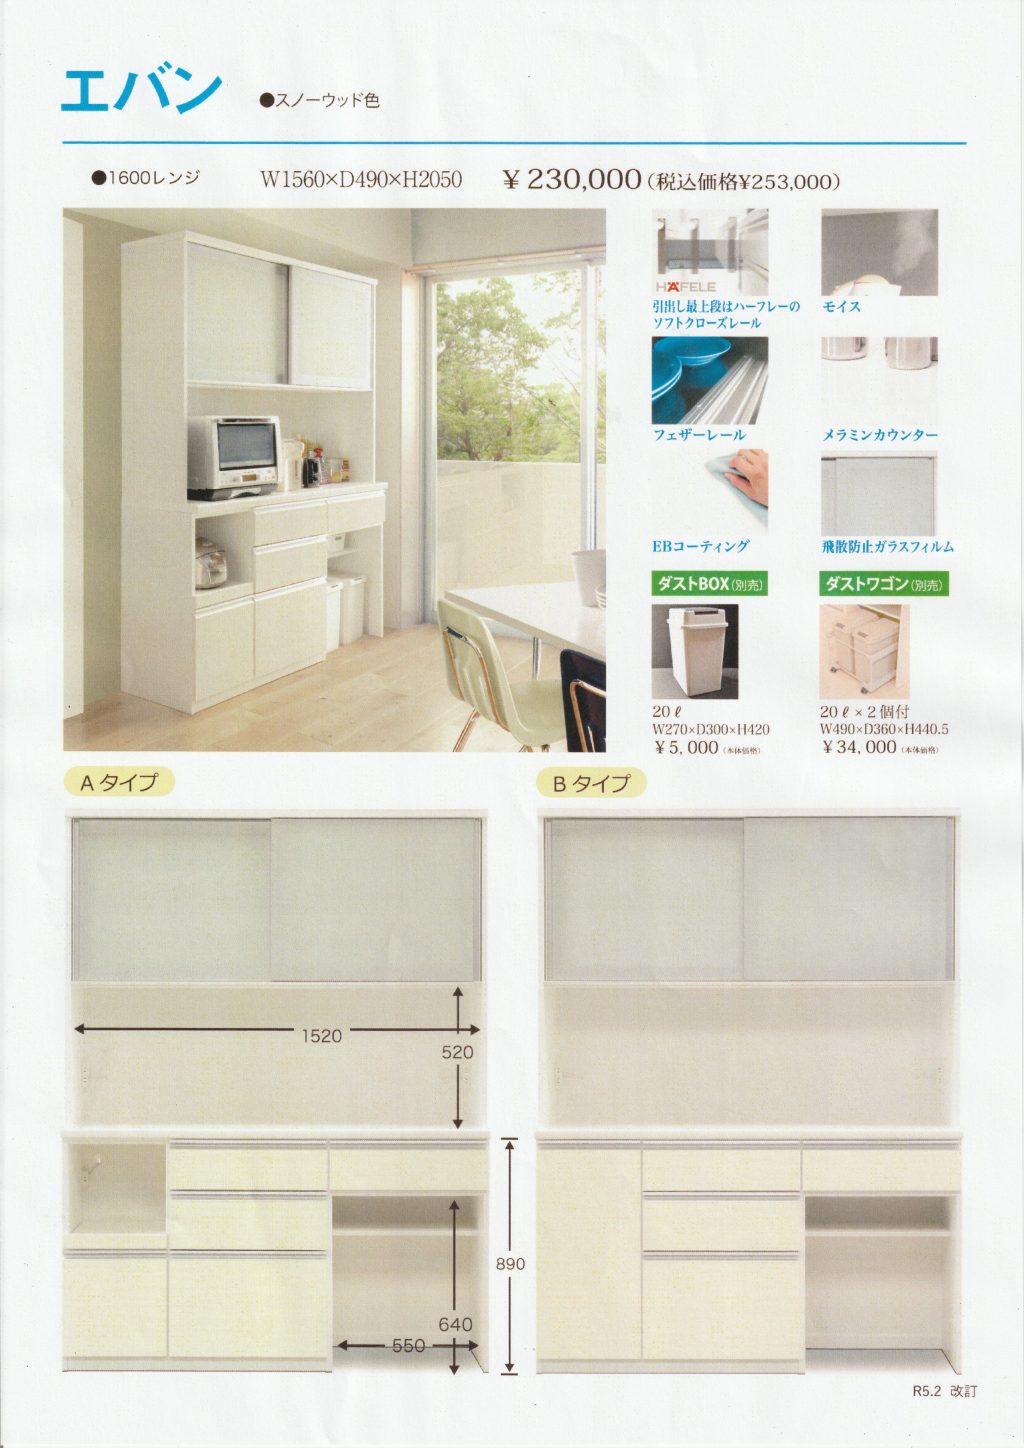 1159 松田家具 キッチンボード - 食器棚、キッチン収納